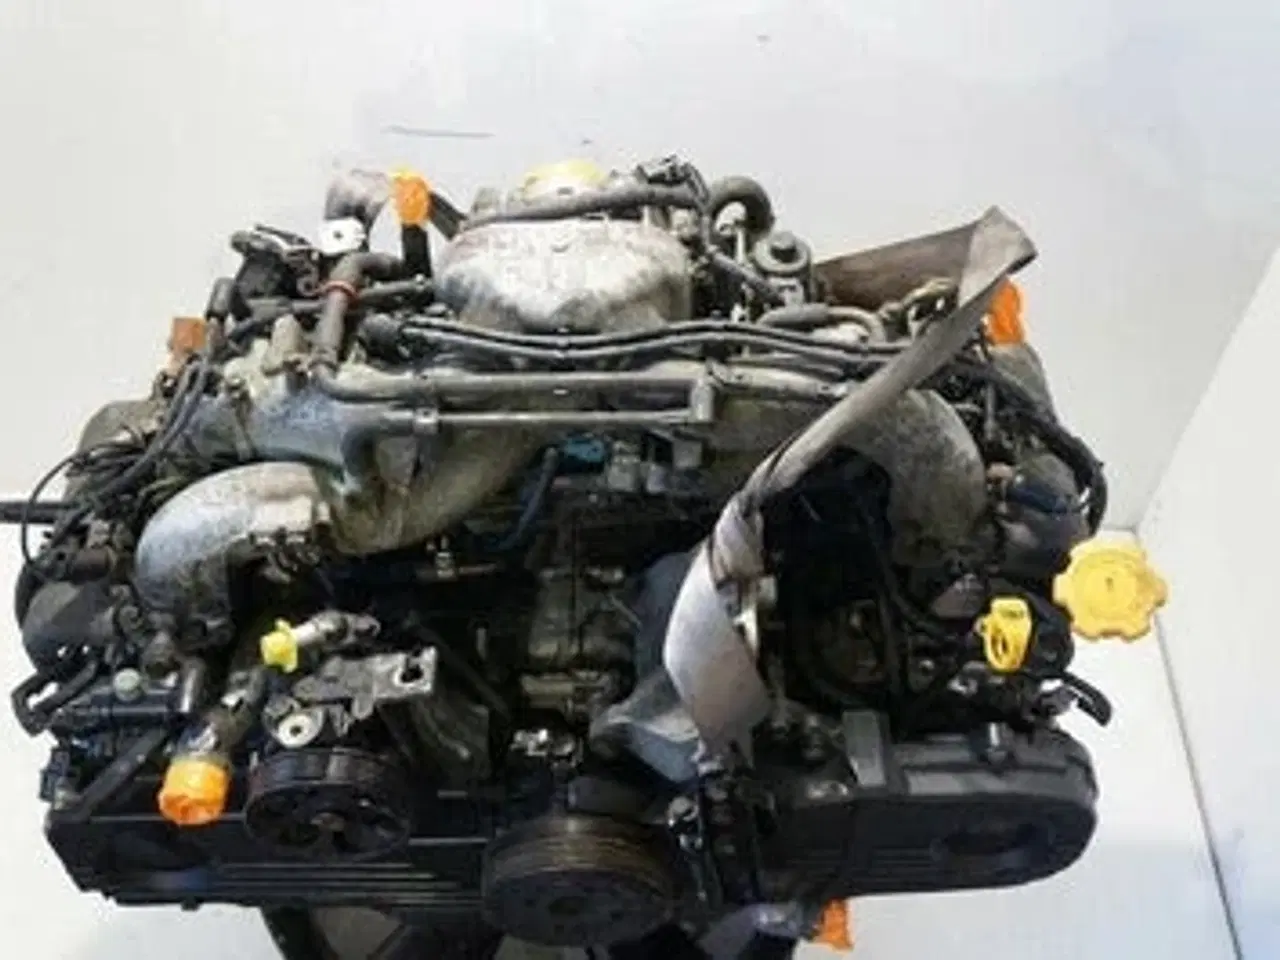 Billede 1 - EJ25 - Subaru Forester SG 2.5 Turbo 230 HK motor